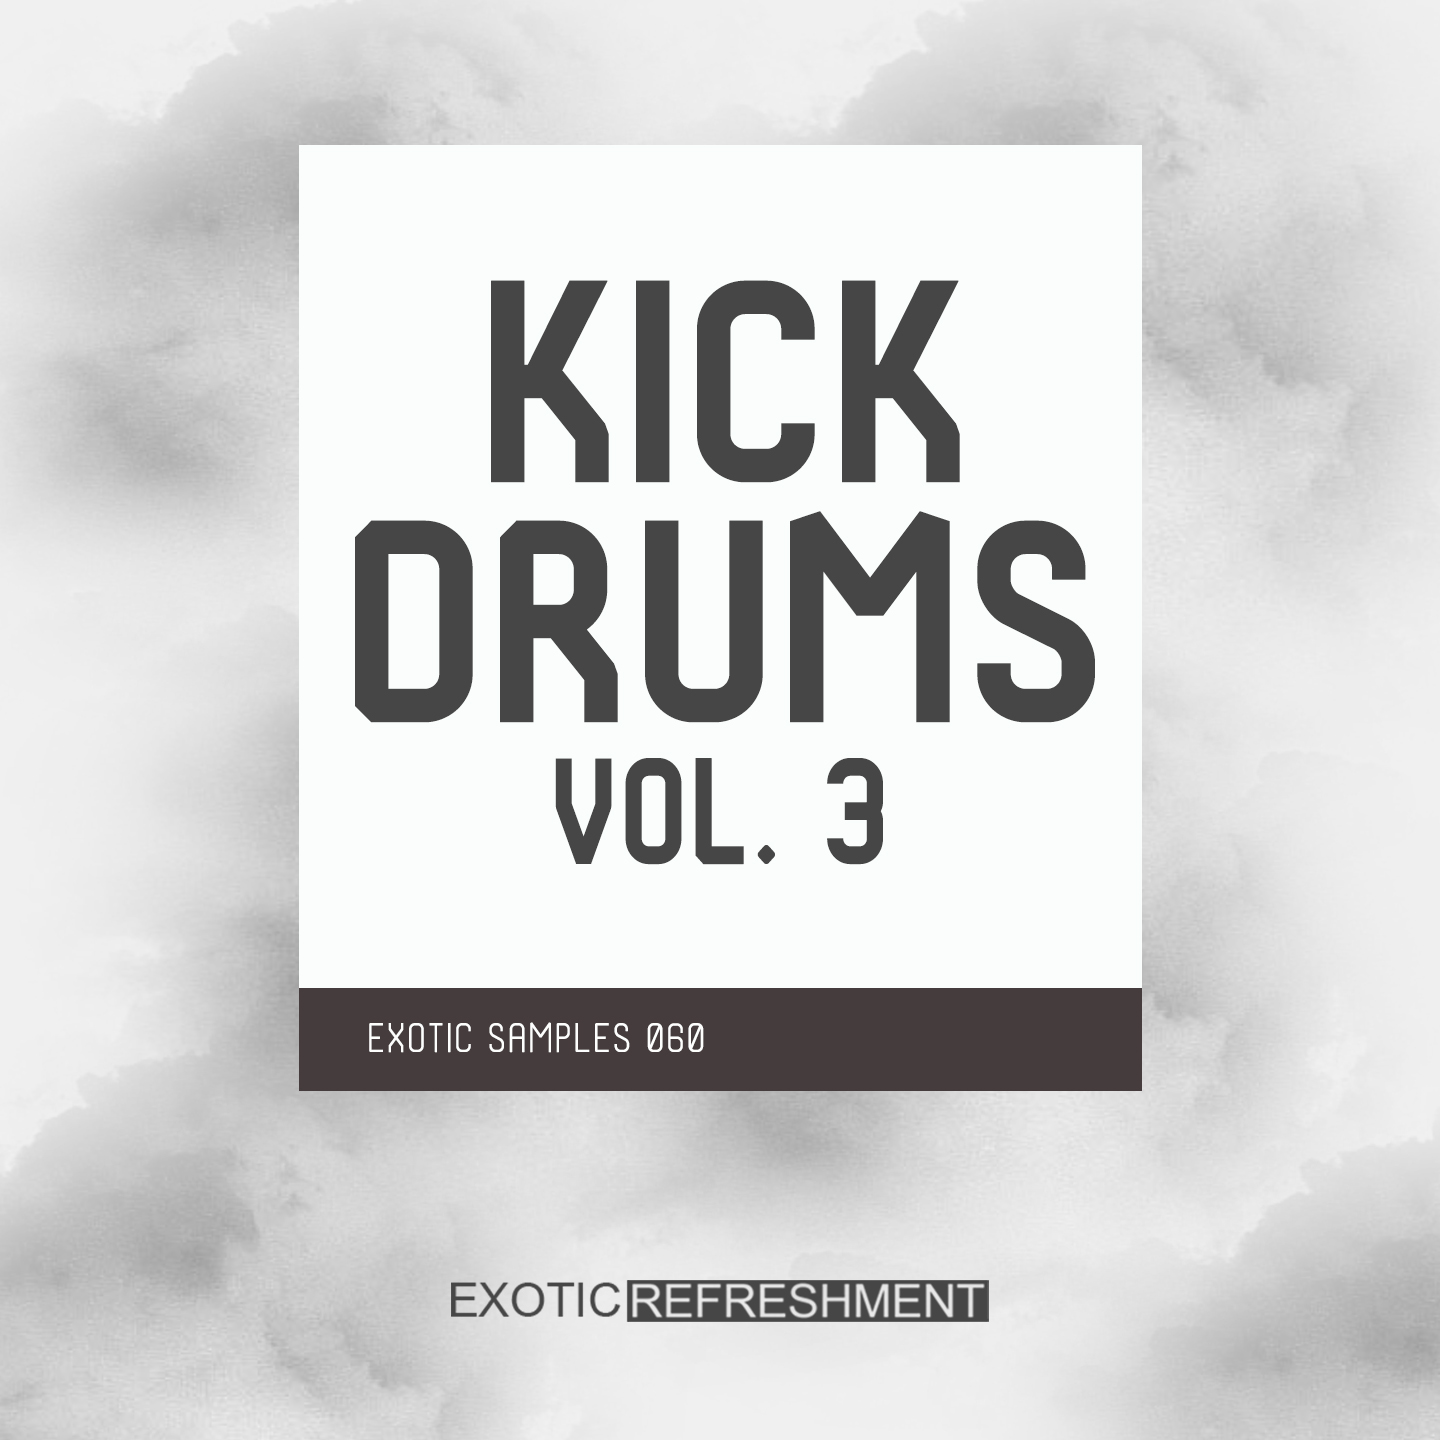 Kick Drums 3